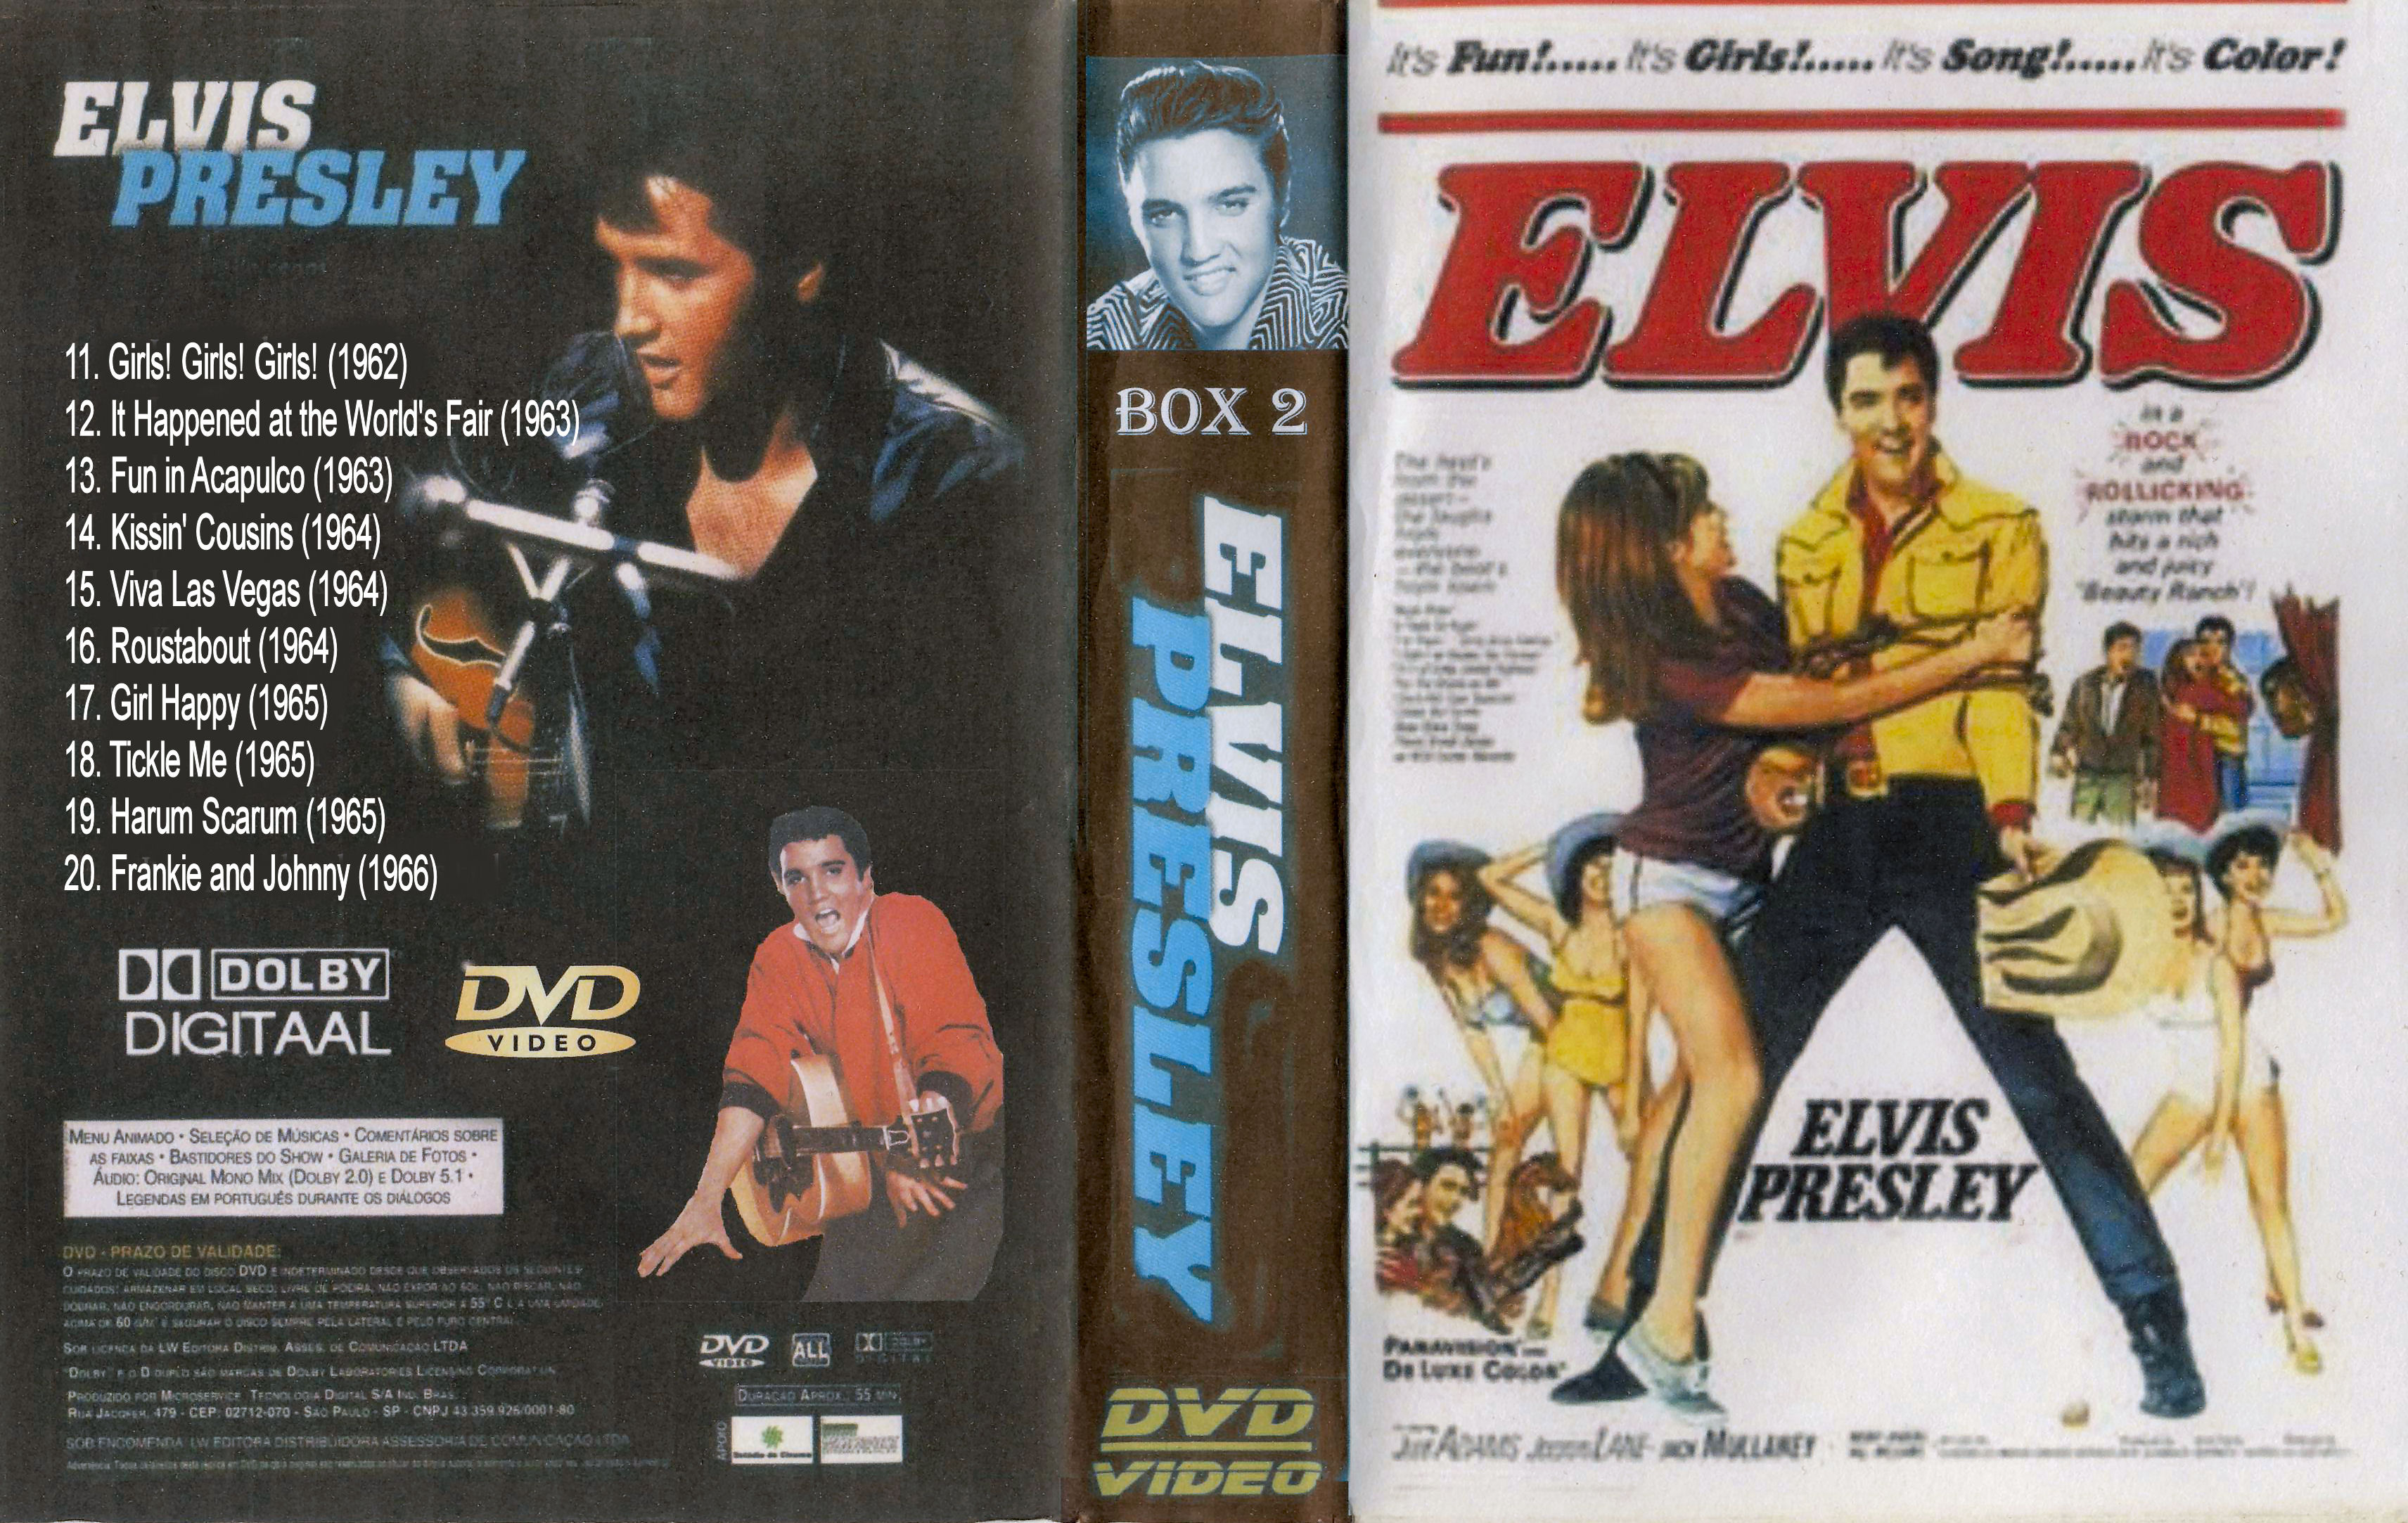 Elvis Presley Collectie ( 19. Harum Scarum (1965) DvD 19 van 31